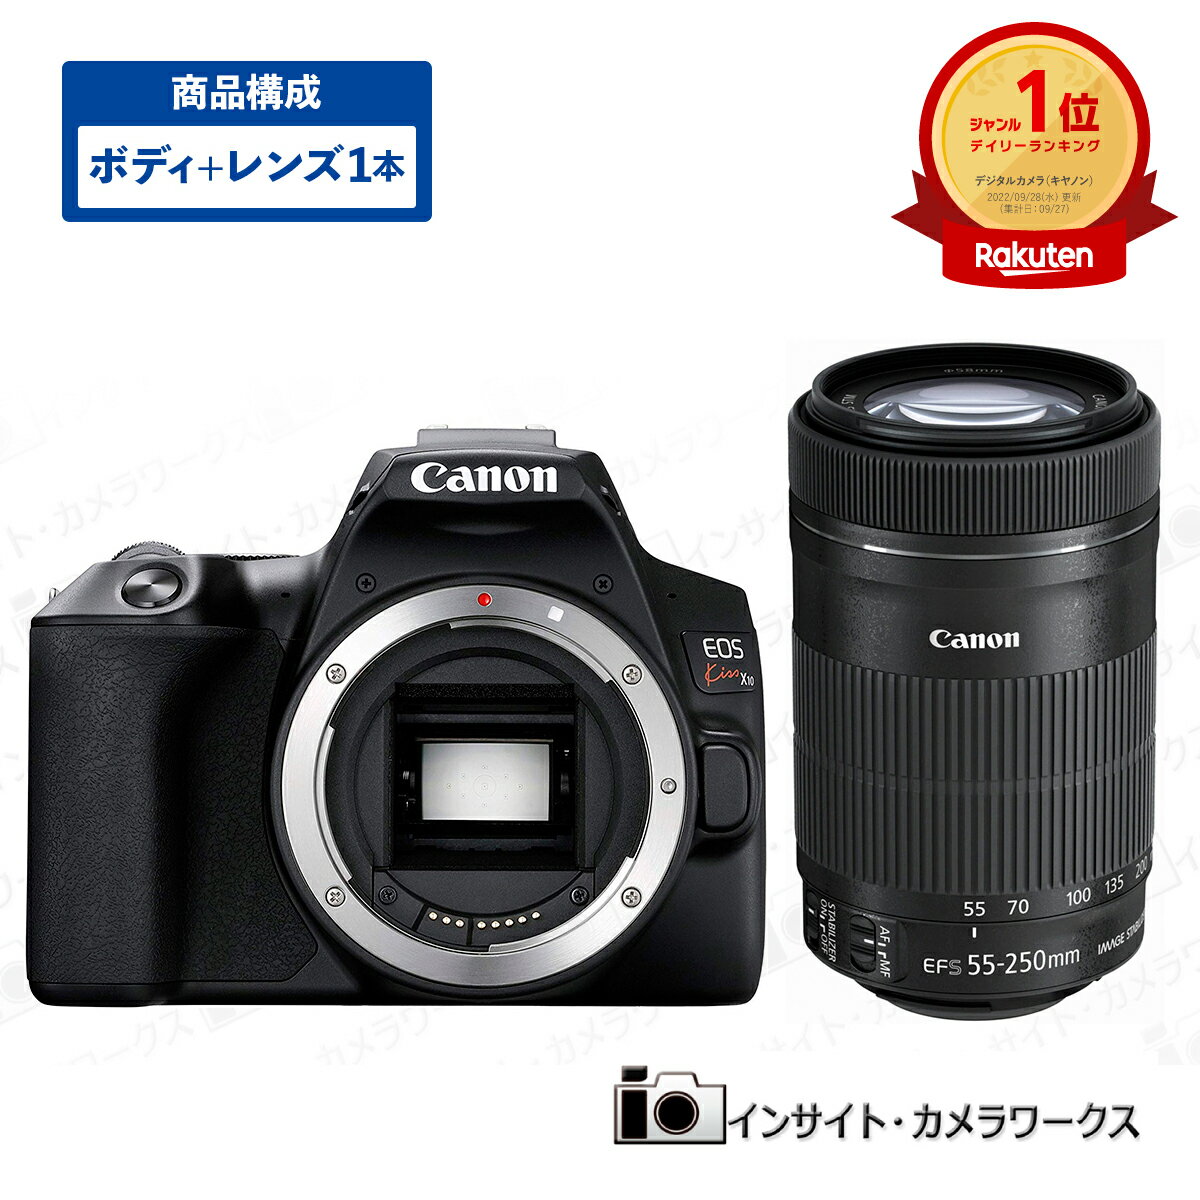 キヤノン EOS Kiss X10 ボディ ブラック + 望遠ズームレンズセット EF-S55-250mm F4-5.6 IS STM デジタル一眼レフカメラ イオス Canon